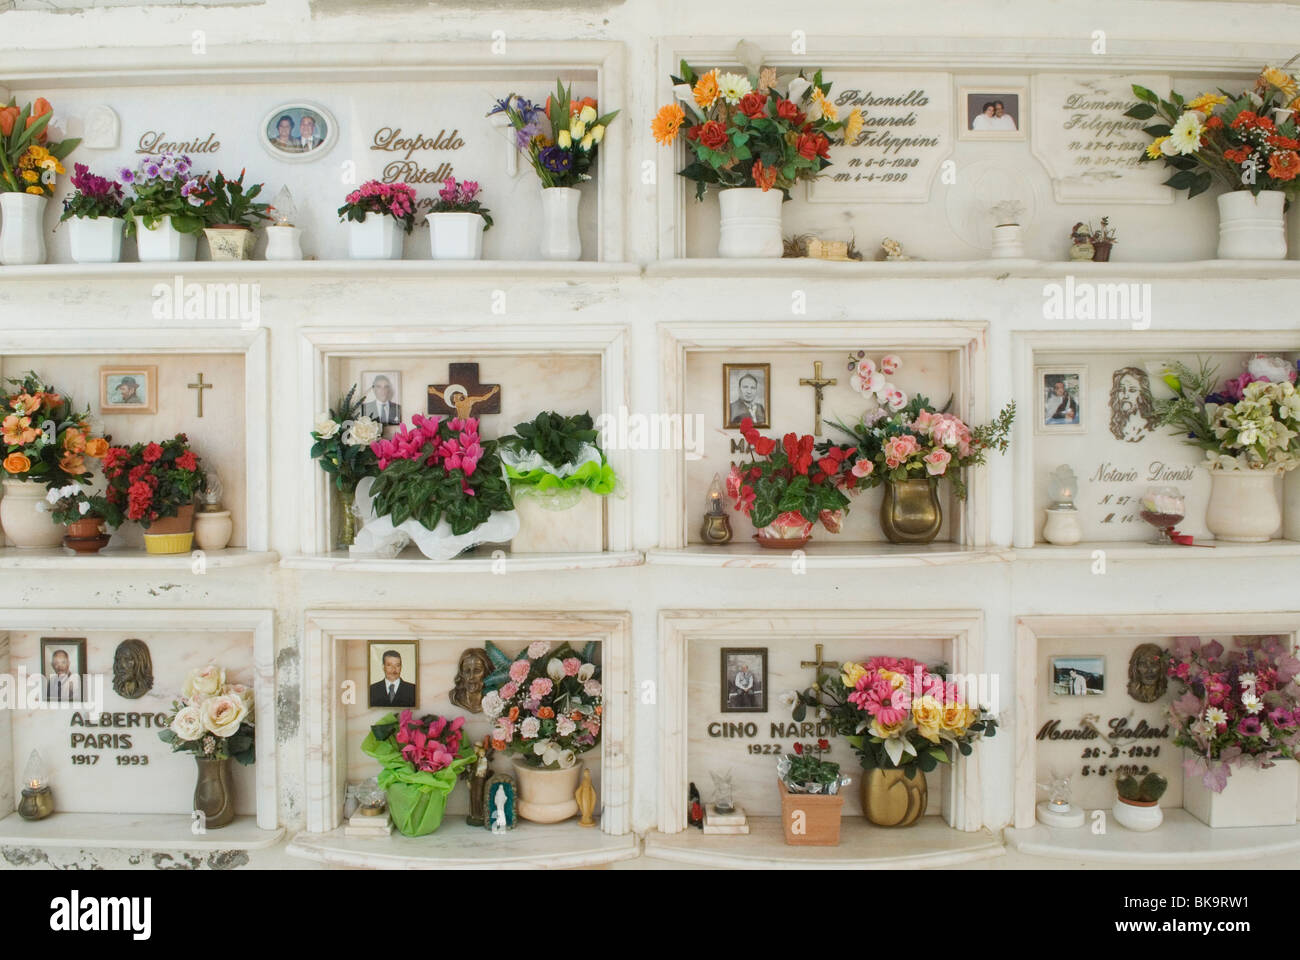 Fleurs en plastique sur une tombe familiale. Photographie de la personne décédée. Capalbio Toscane Italie. HOMER SYKES des années 2010 2010 Banque D'Images